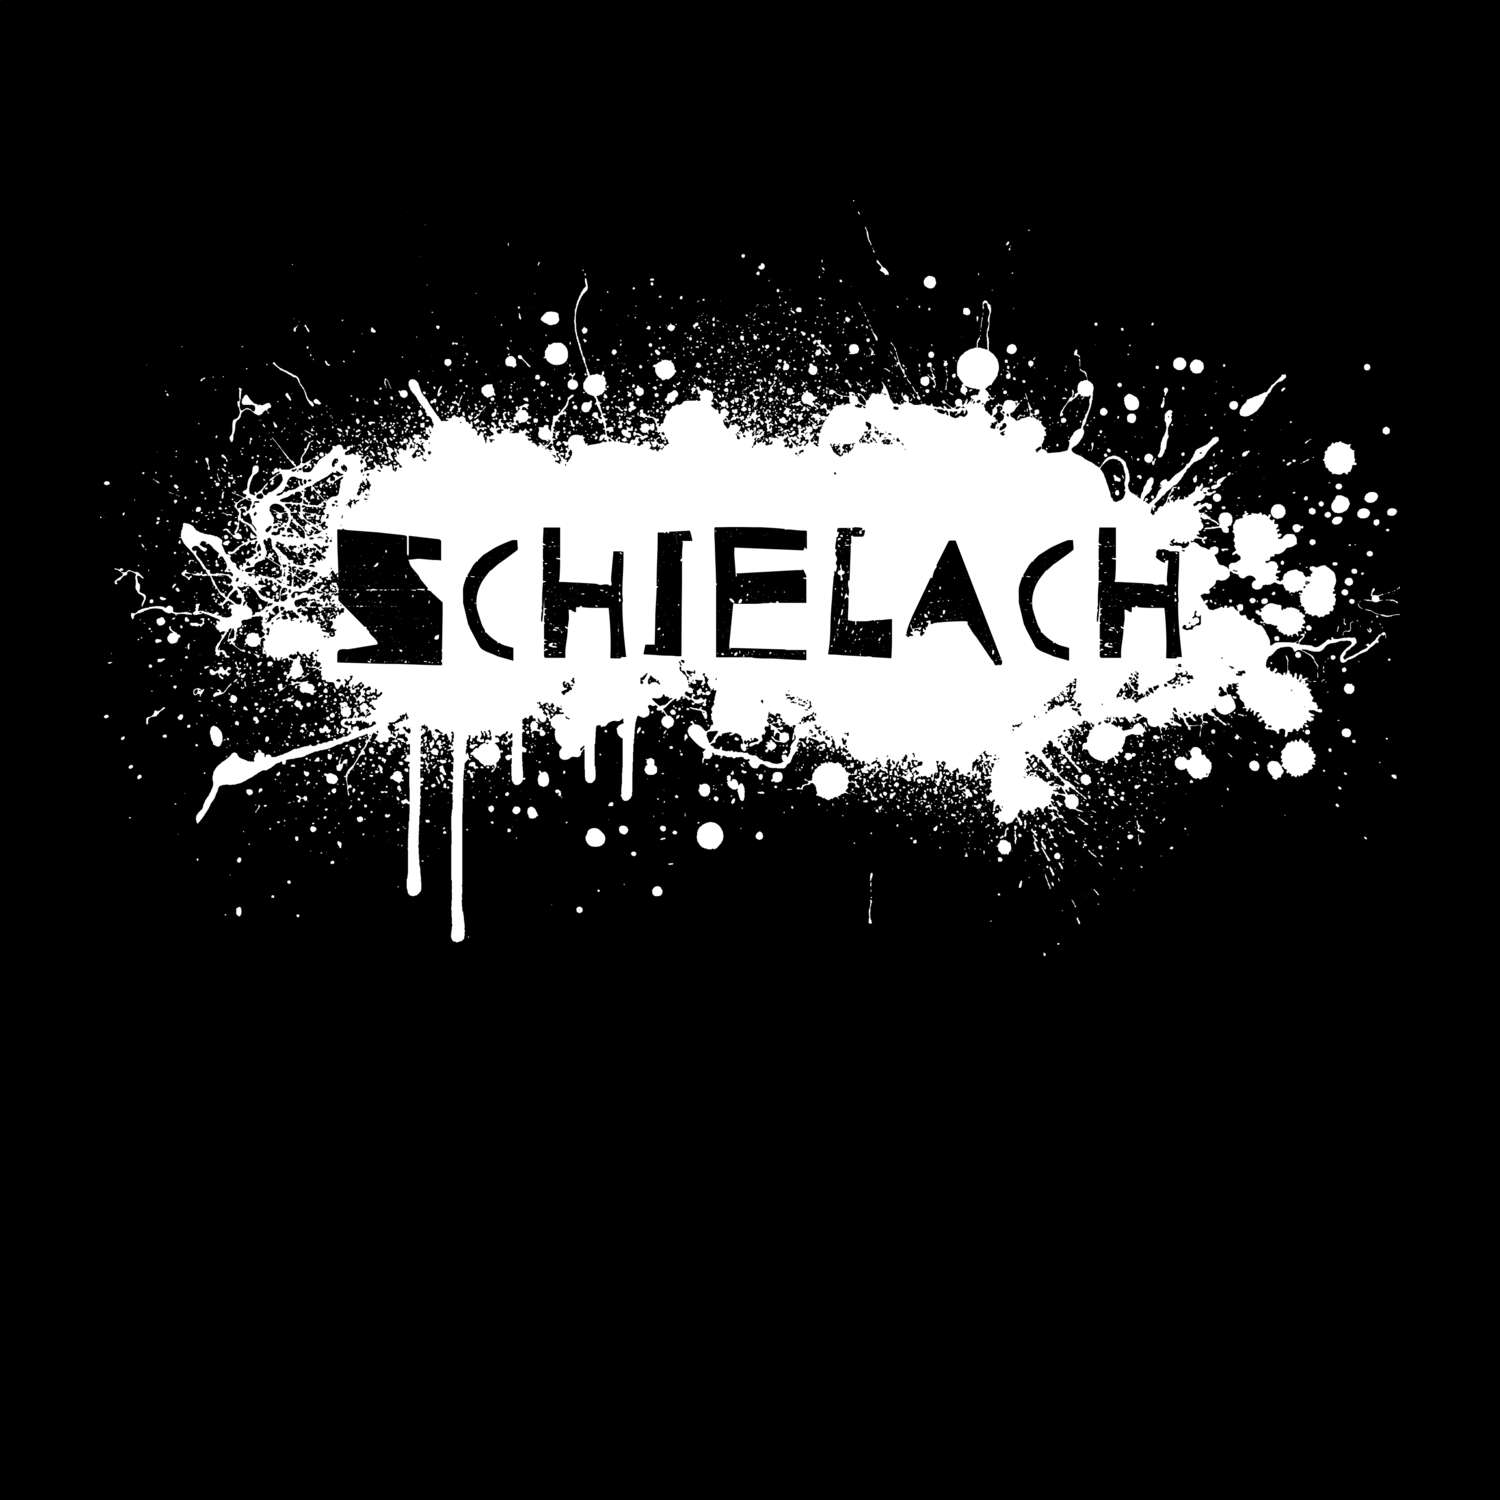 Schielach T-Shirt »Paint Splash Punk«